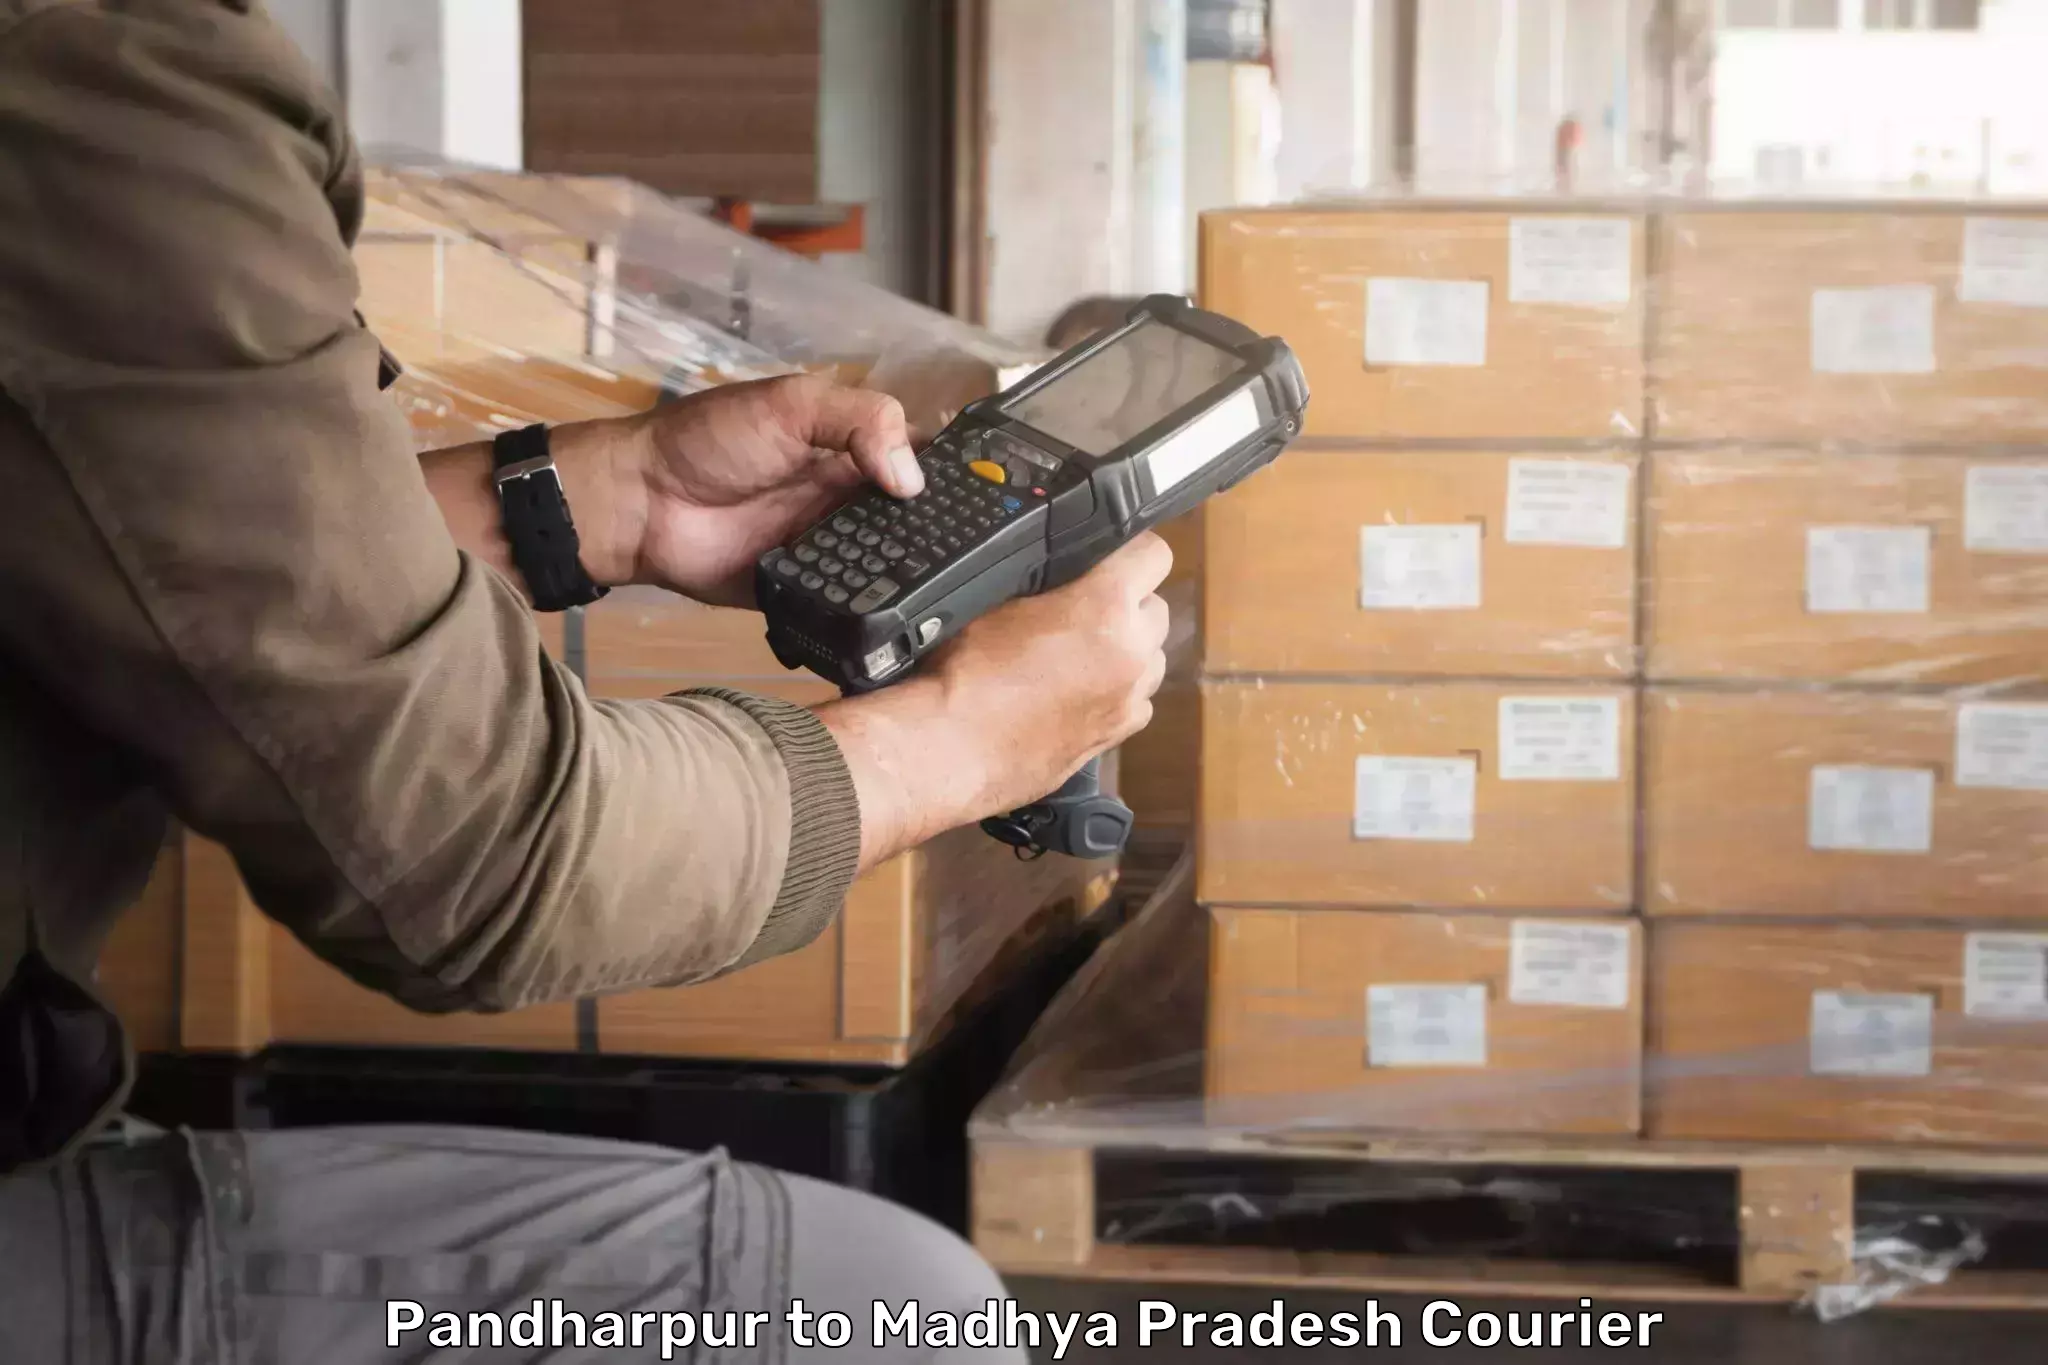 International courier rates Pandharpur to Begumganj